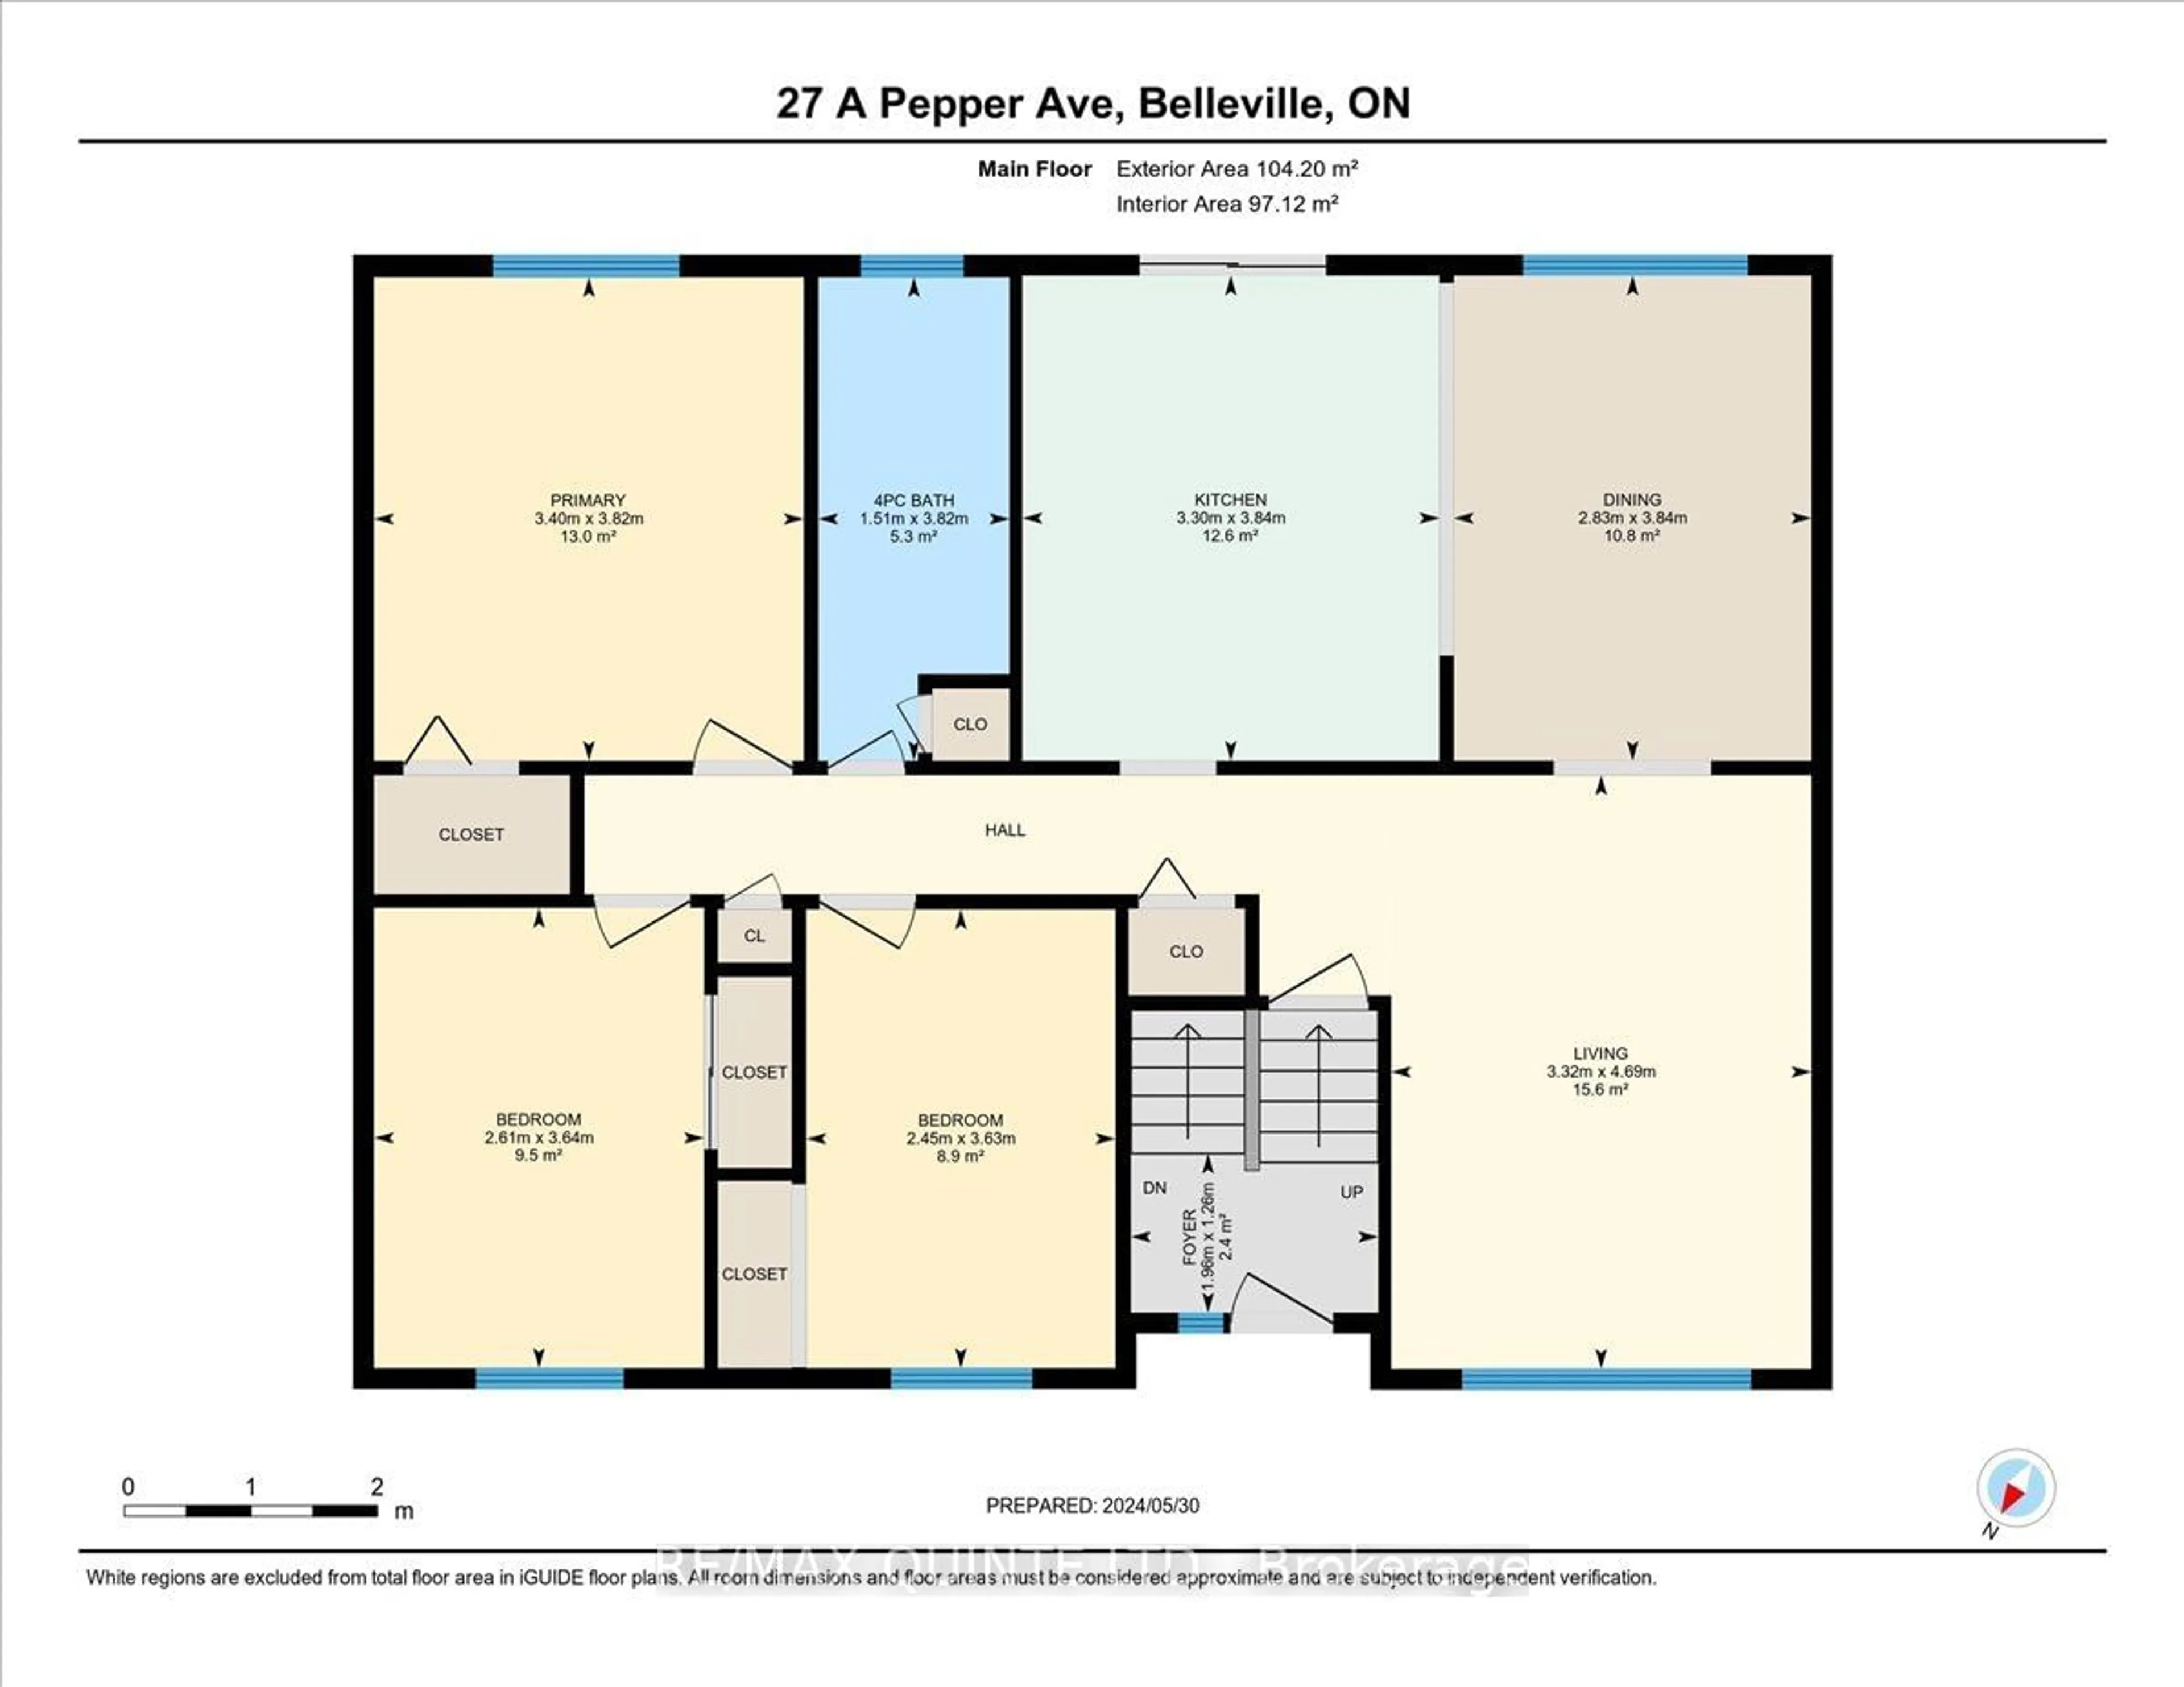 Floor plan for 27 Pepper Ave, Belleville Ontario K8P 4R2